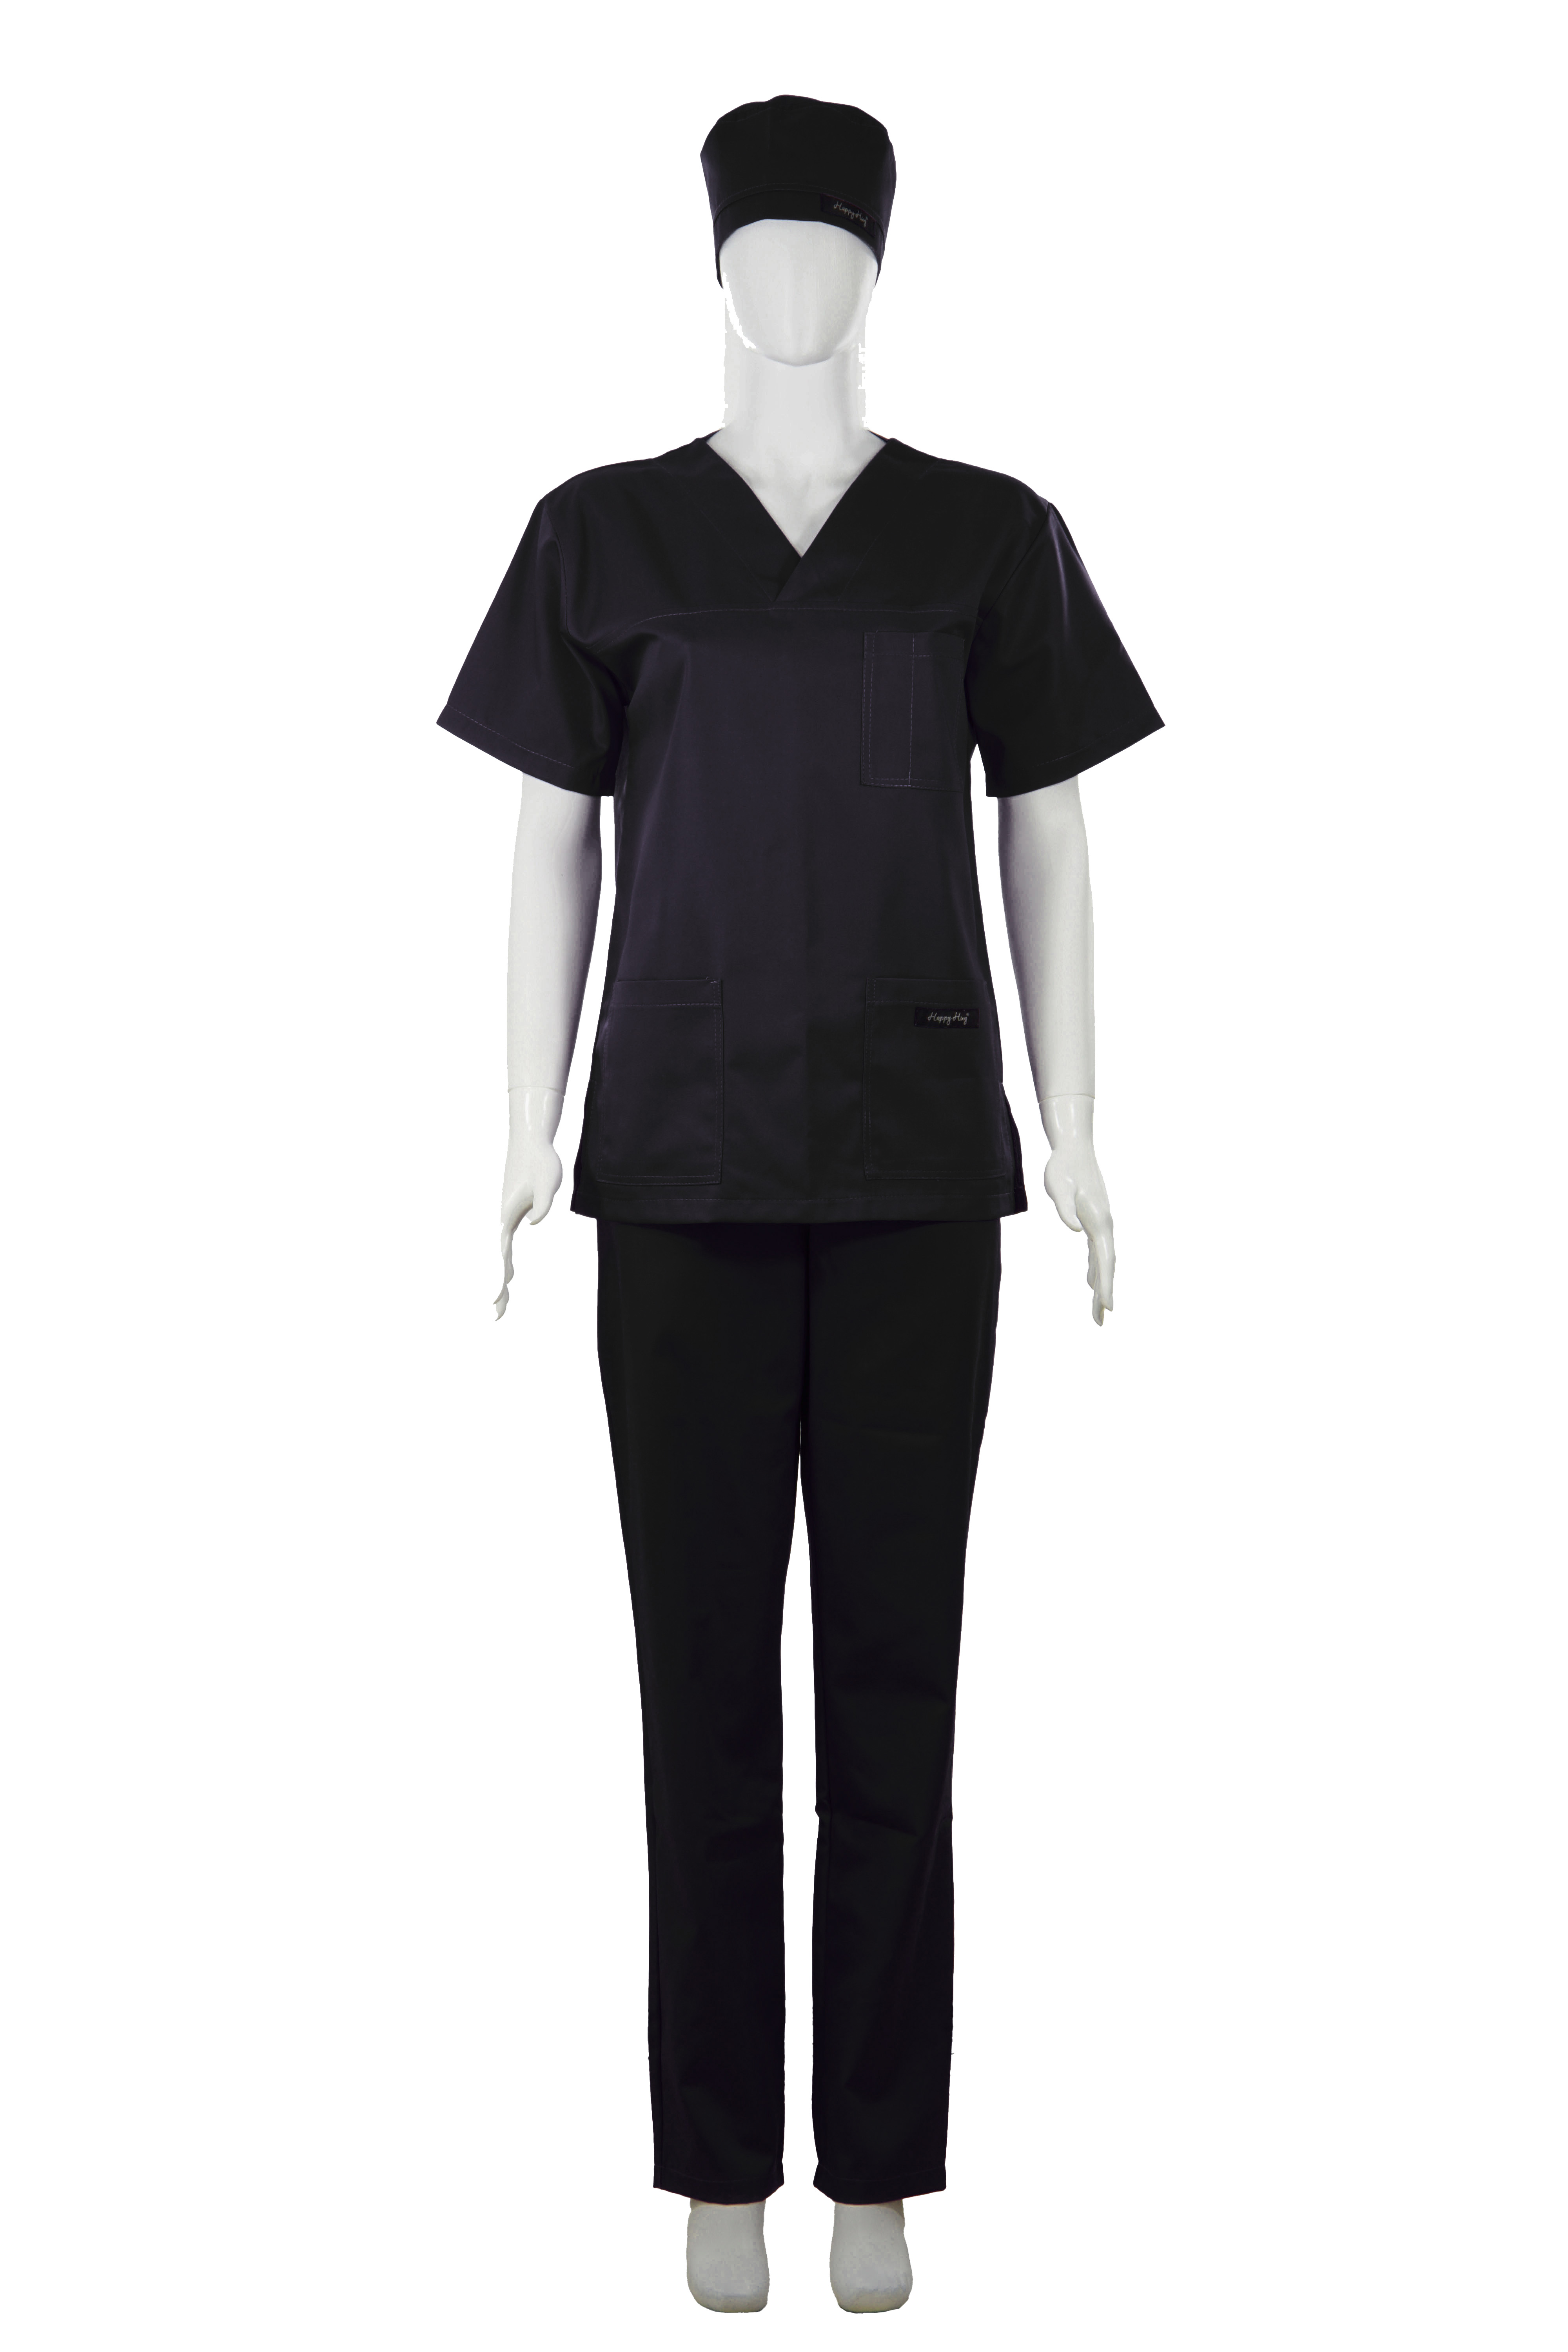 Costum Medical Unisex negru [2]